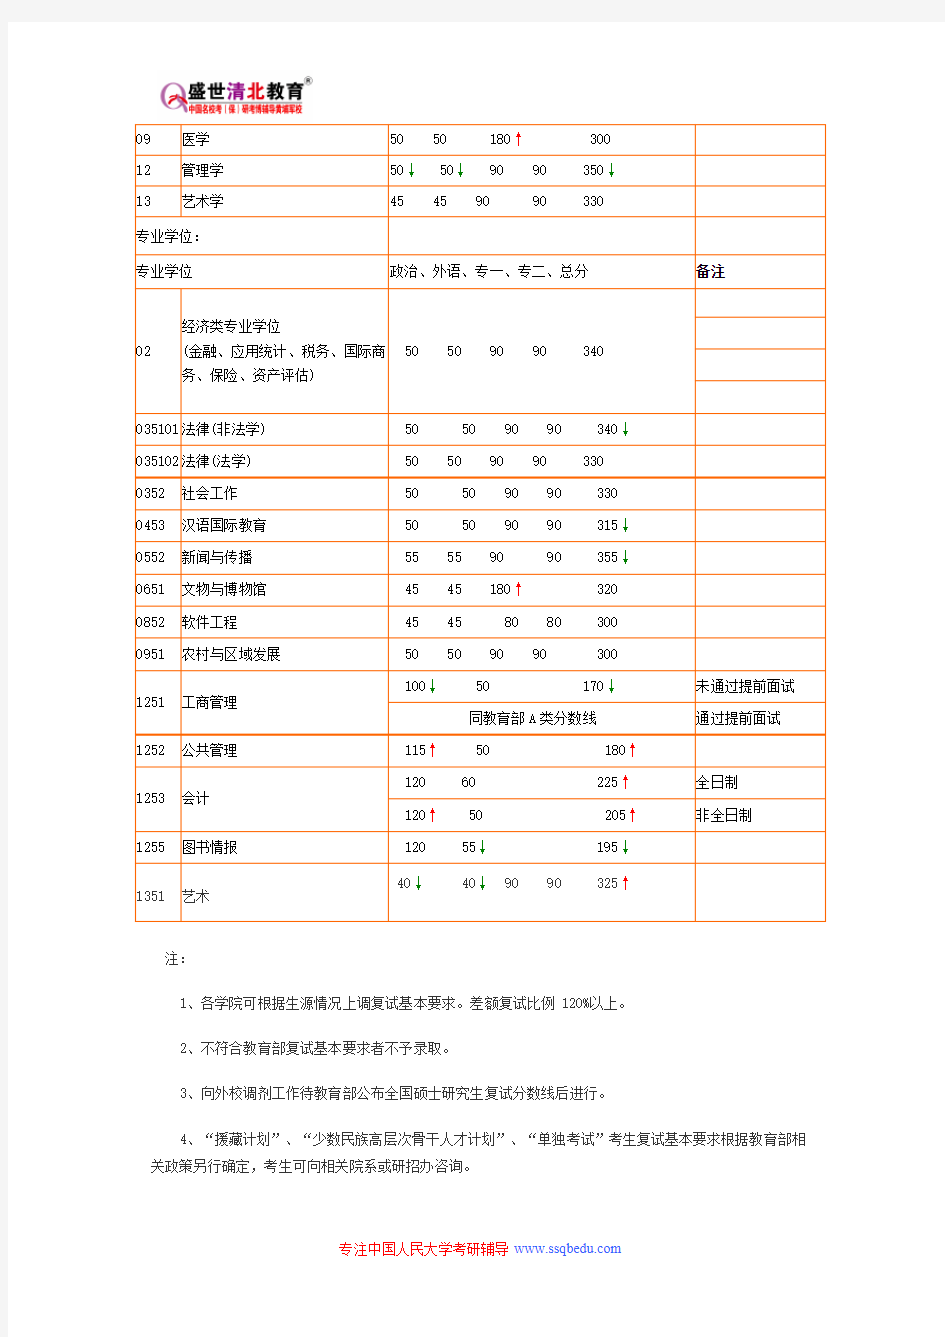 中国人民大学408-计算机学科专业基础综合考研参考书目、考研真题、复试分数线